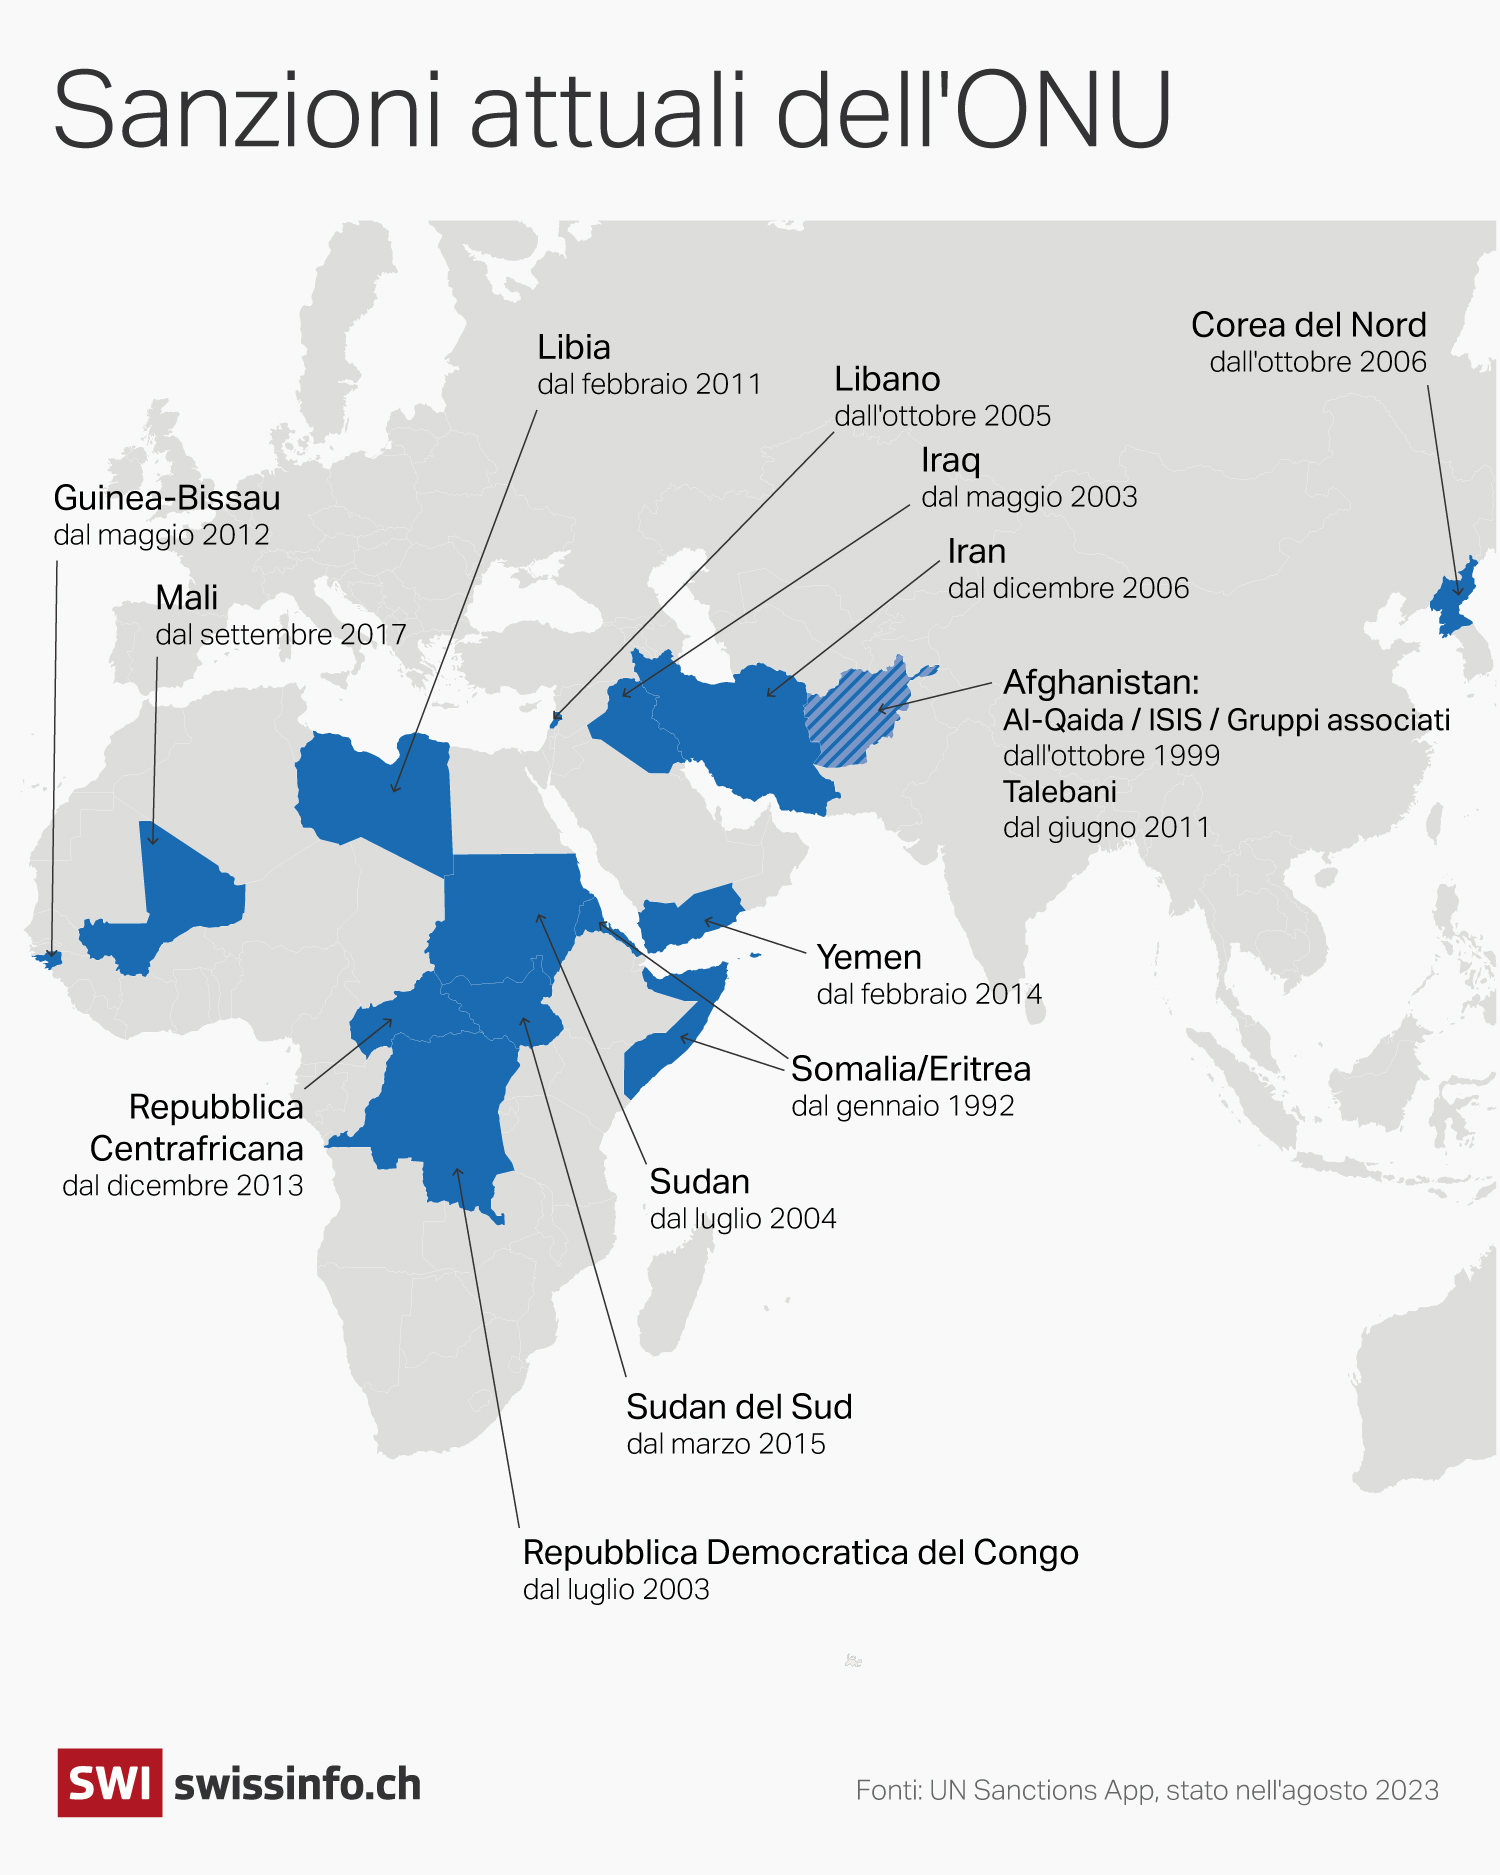 mappa del mondo che mostra quali paesi e da quando sono sottoposti a sanzioni dell ONU